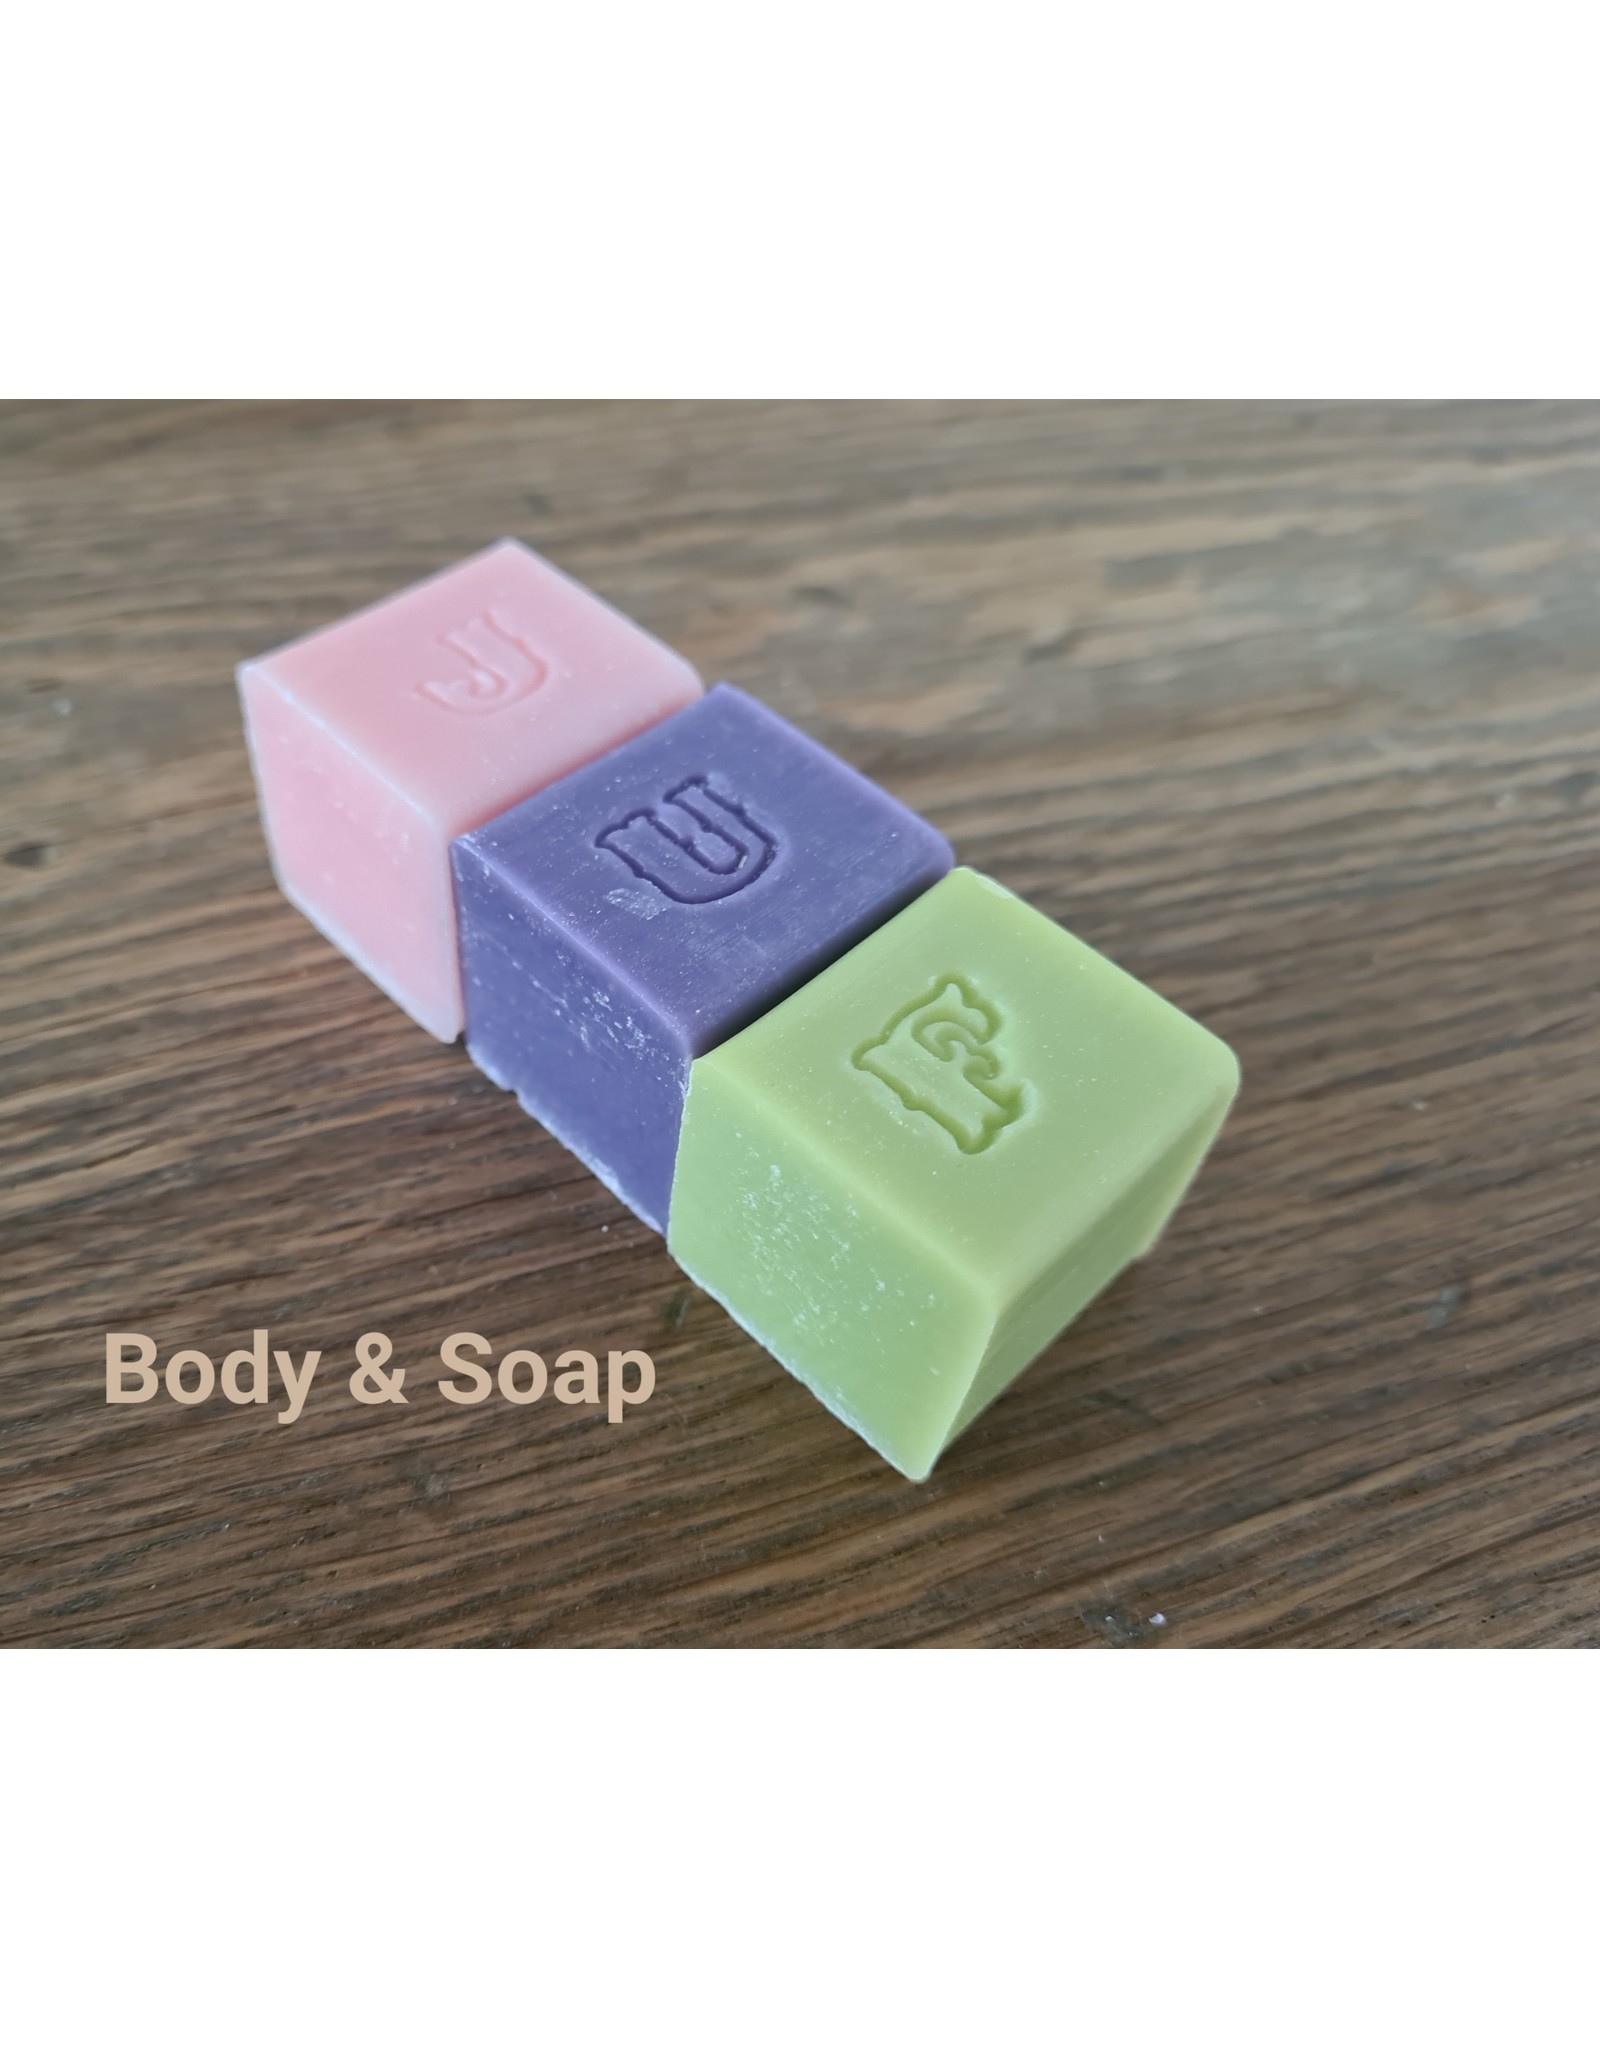 Letterzeepjes 'JUF' - Body & Soap